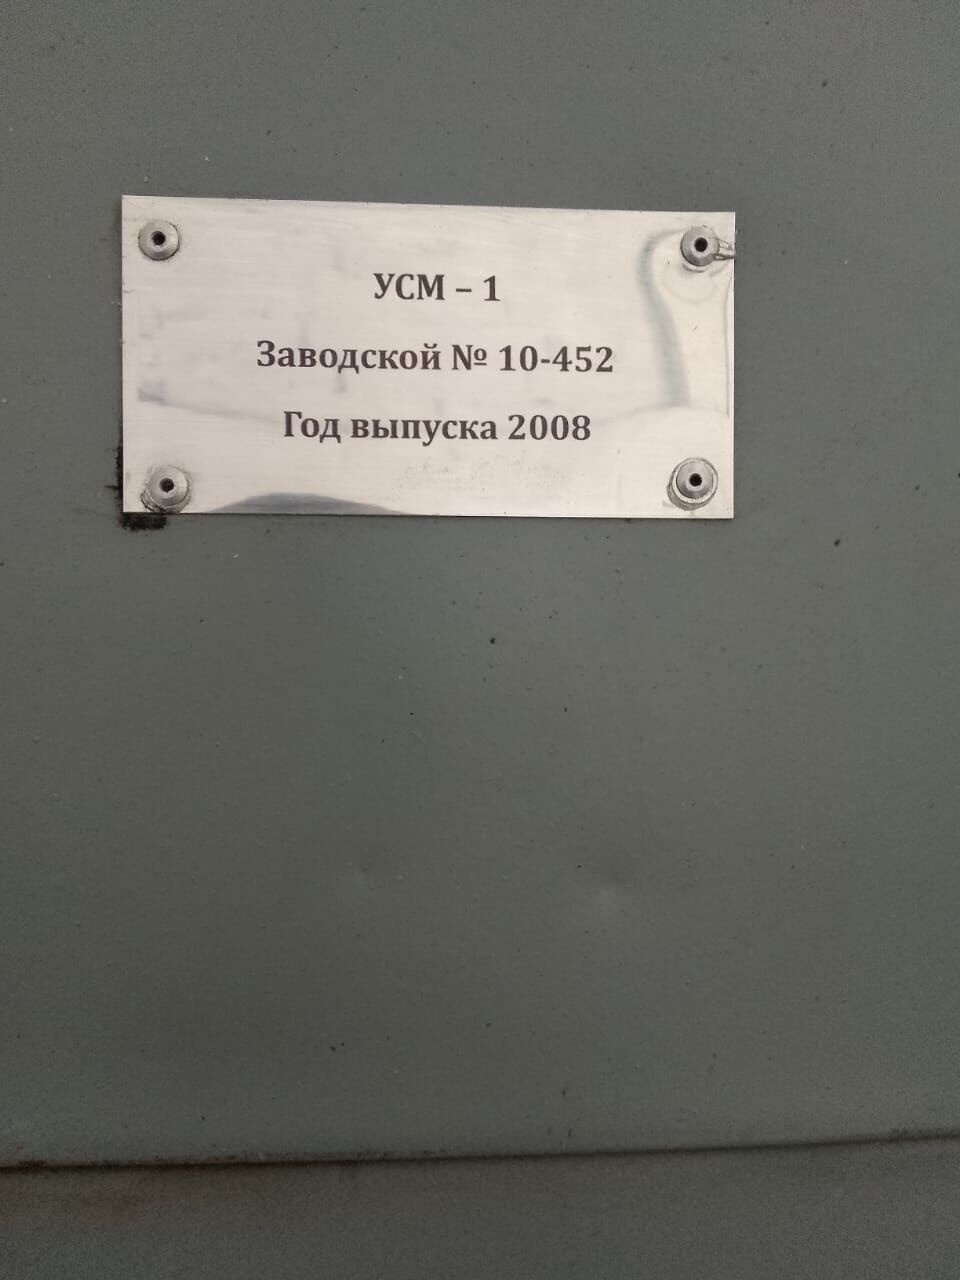 Установка для термической обработки сыпучих продуктов УСМ-1 2